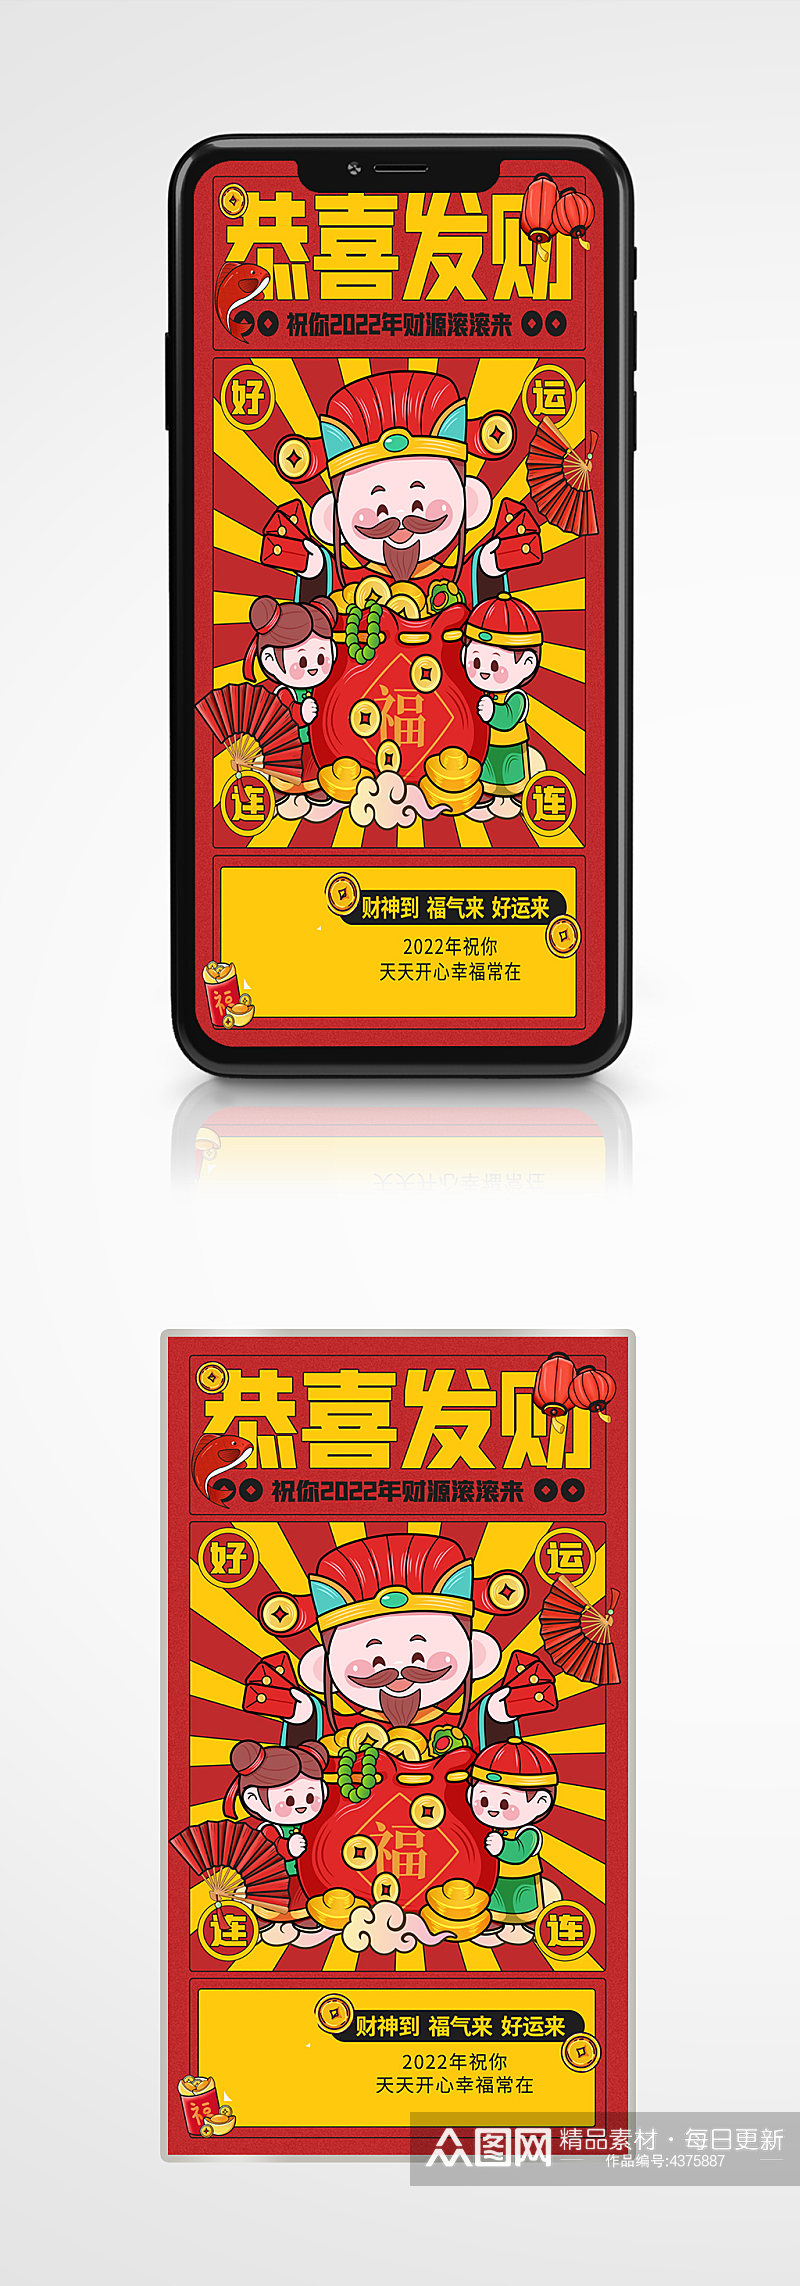 恭喜发财新年祝福红色财神爷手机海报插画素材